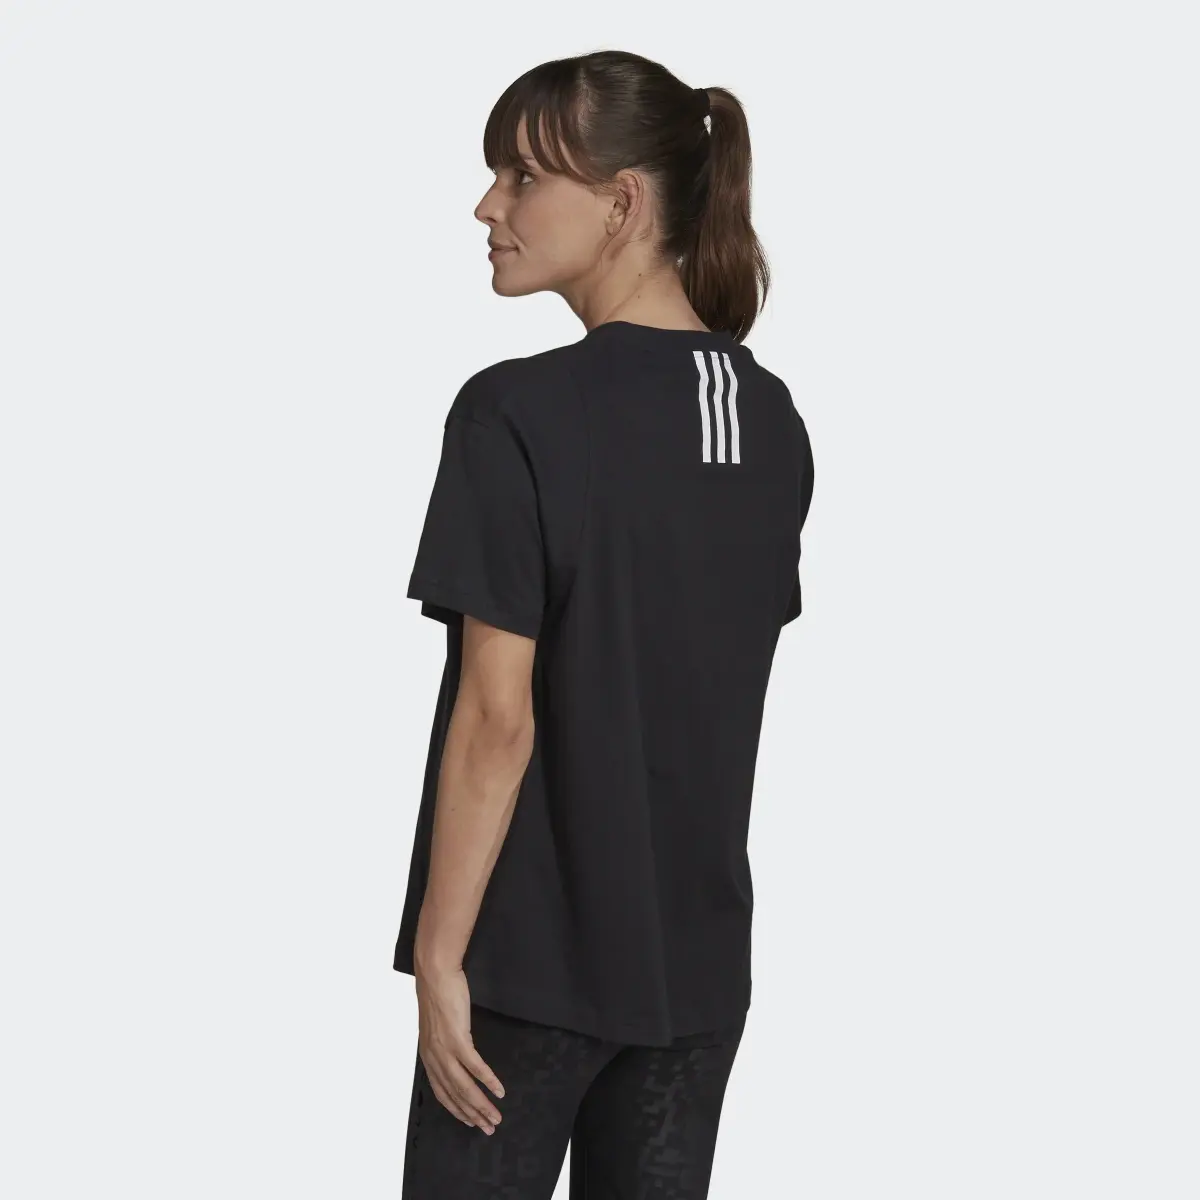 Adidas x Karlie Kloss Crop T-Shirt. 3